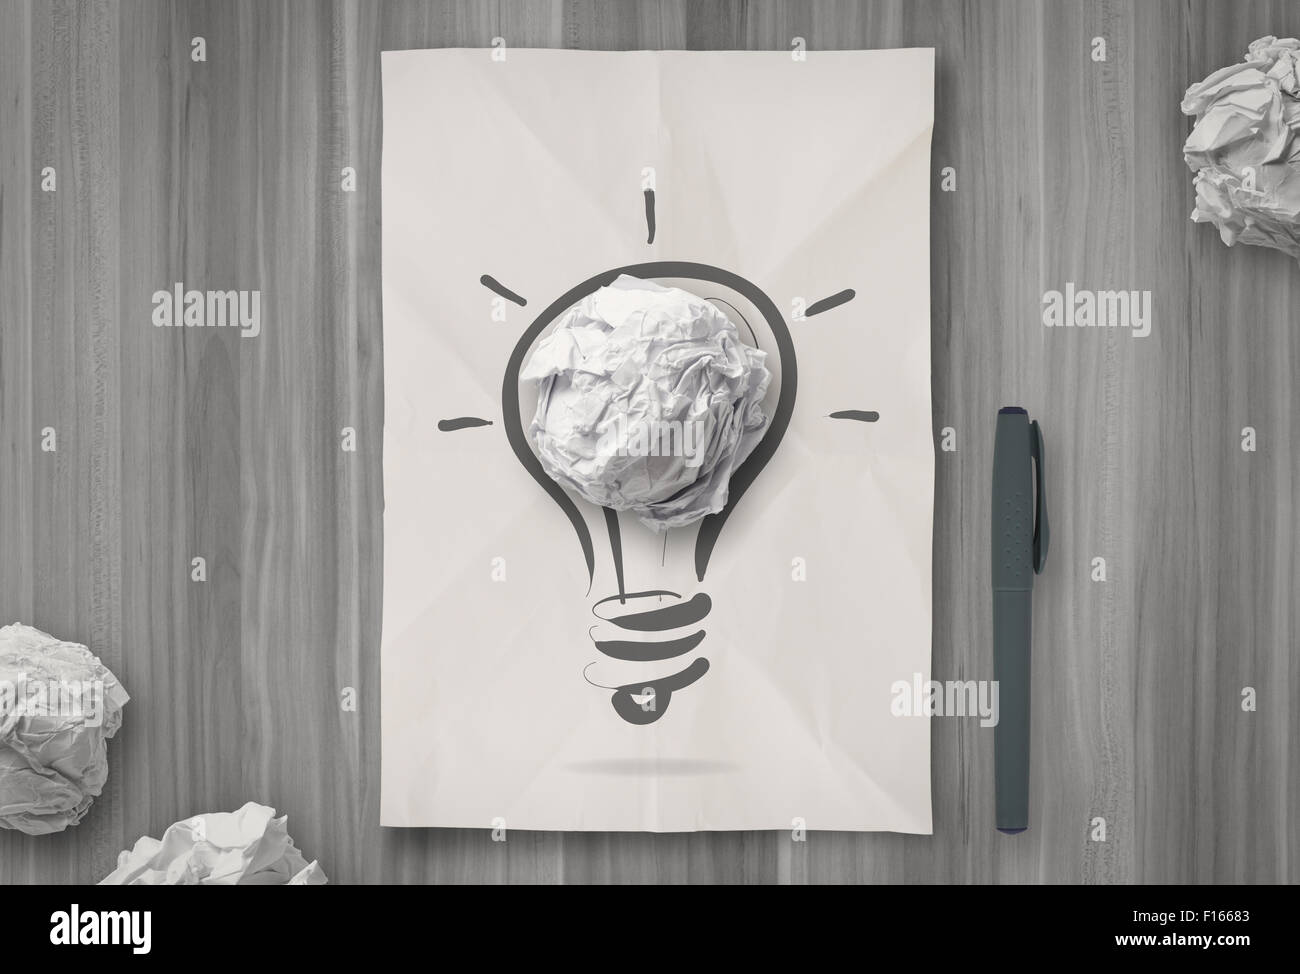 Ampoule Lumière sur papier froissé comme concept créatif Banque D'Images